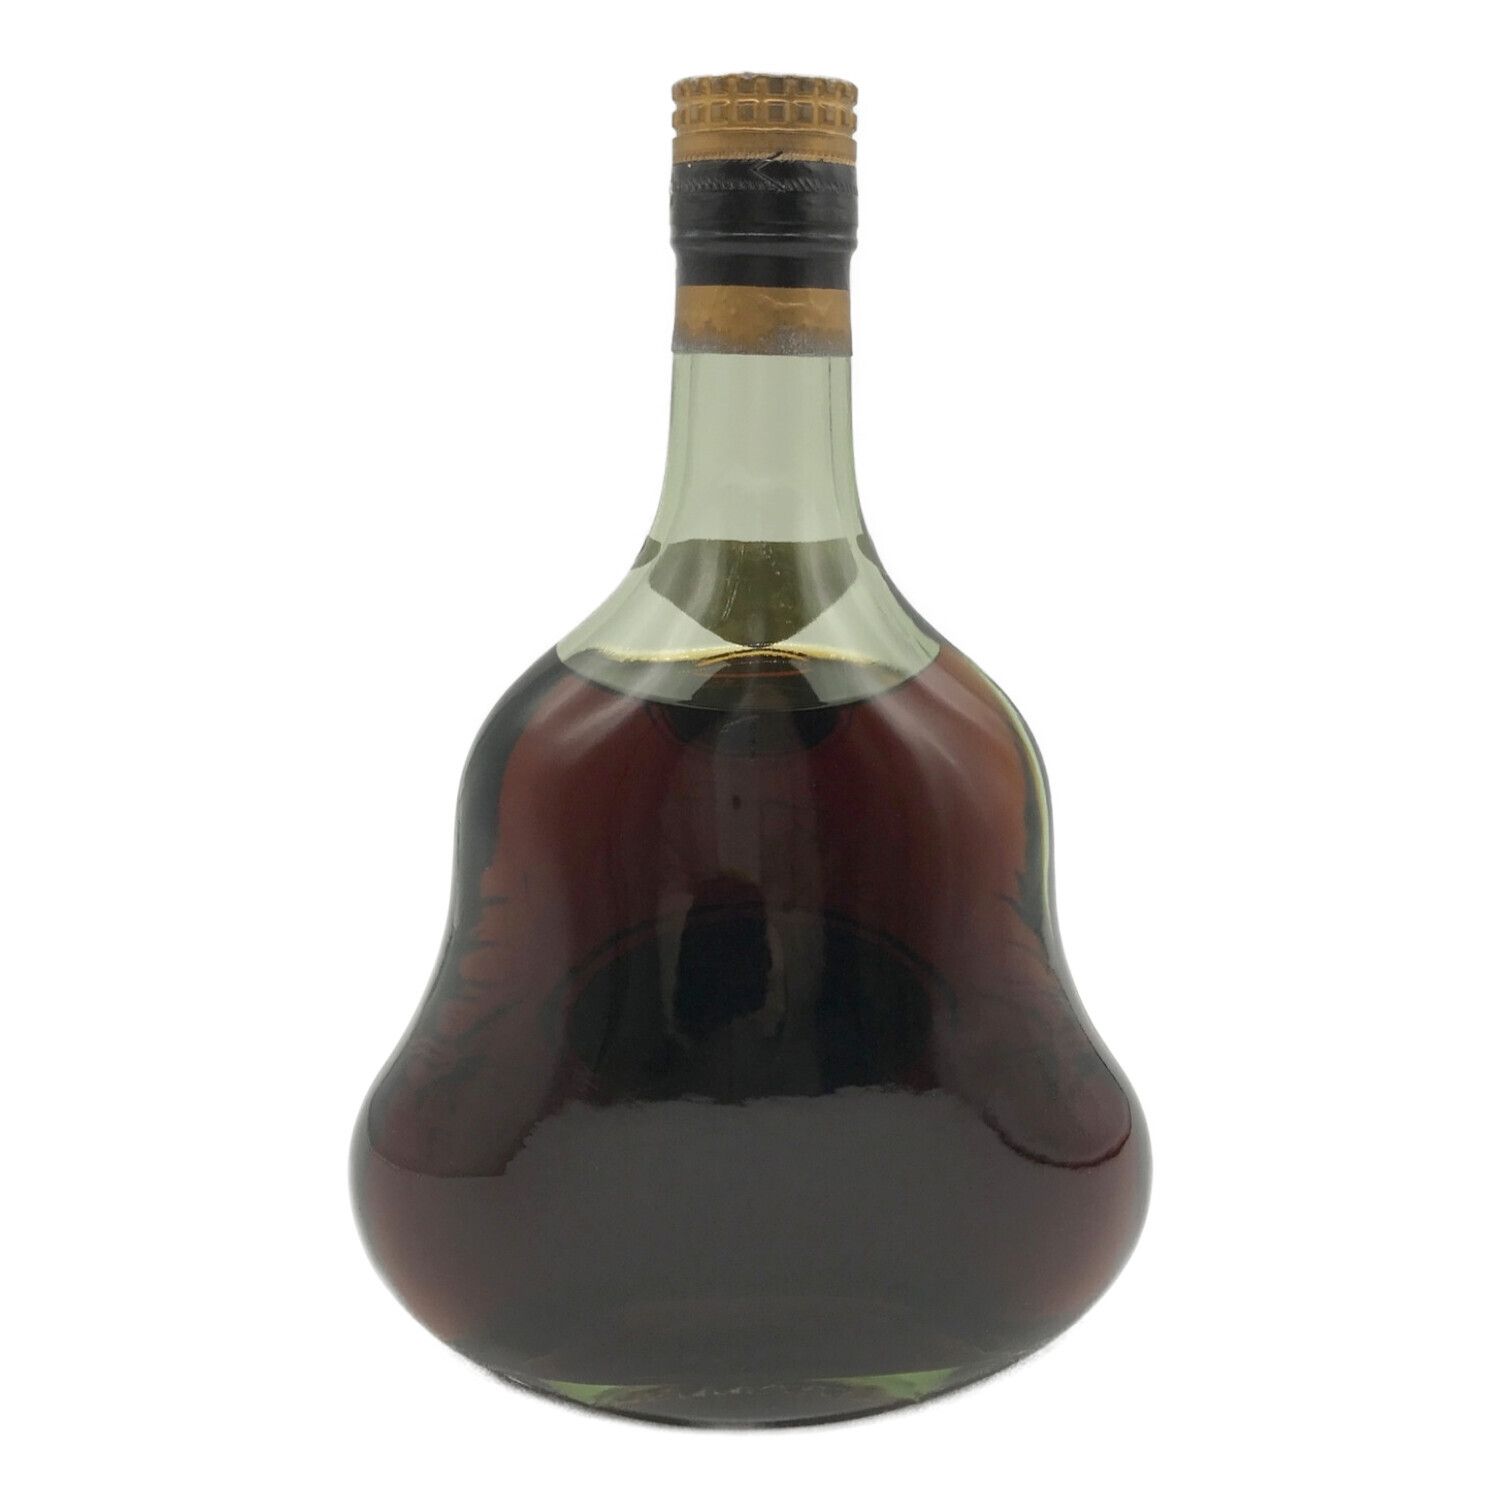 ヘネシー (Hennessy) ブランデー 700ml XO 金キャップ 旧ボトル 